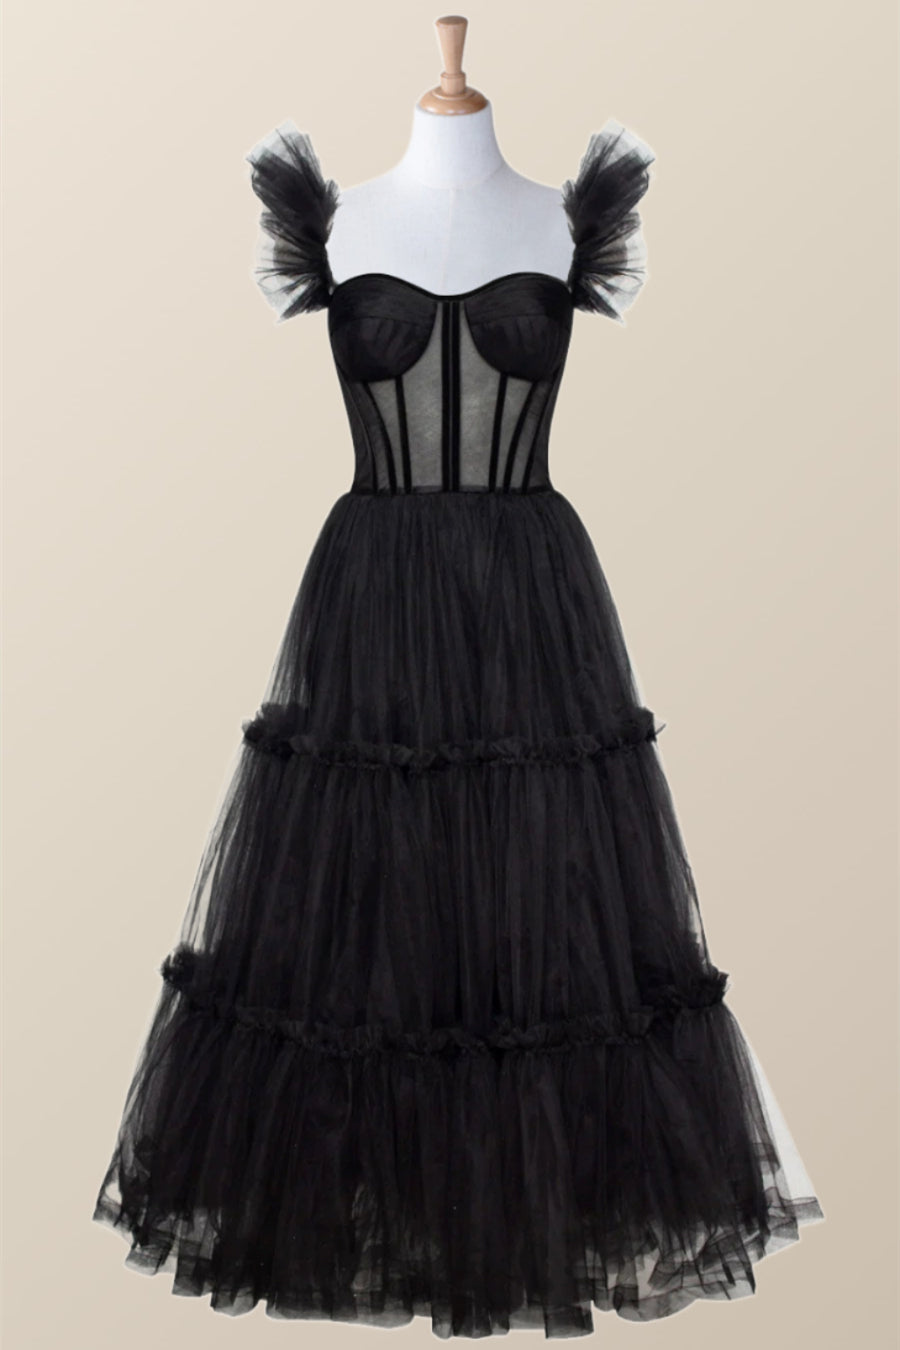 Black Tulle Ruffle Corset Tea Length Dress